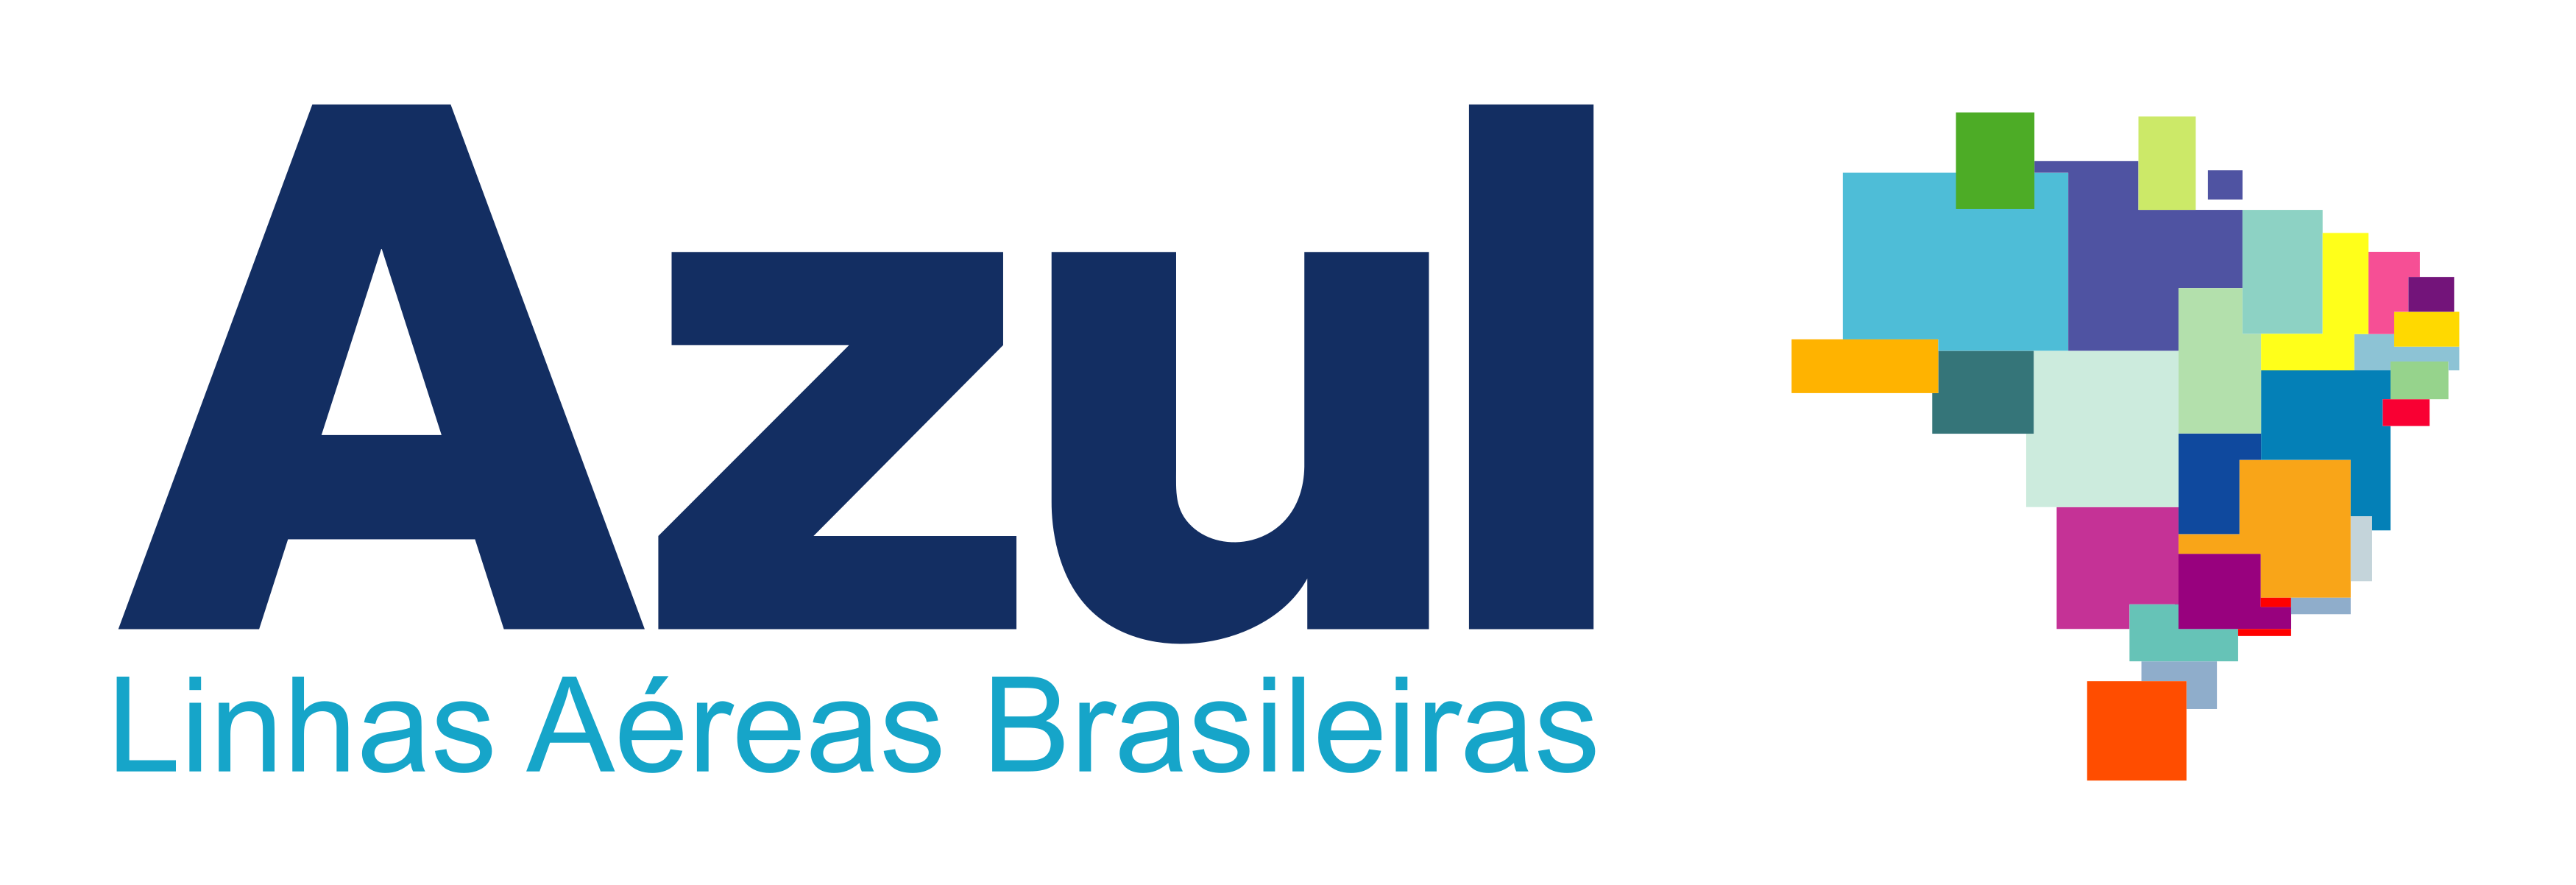 Manutenção de Elevadores em Belo Horizonte